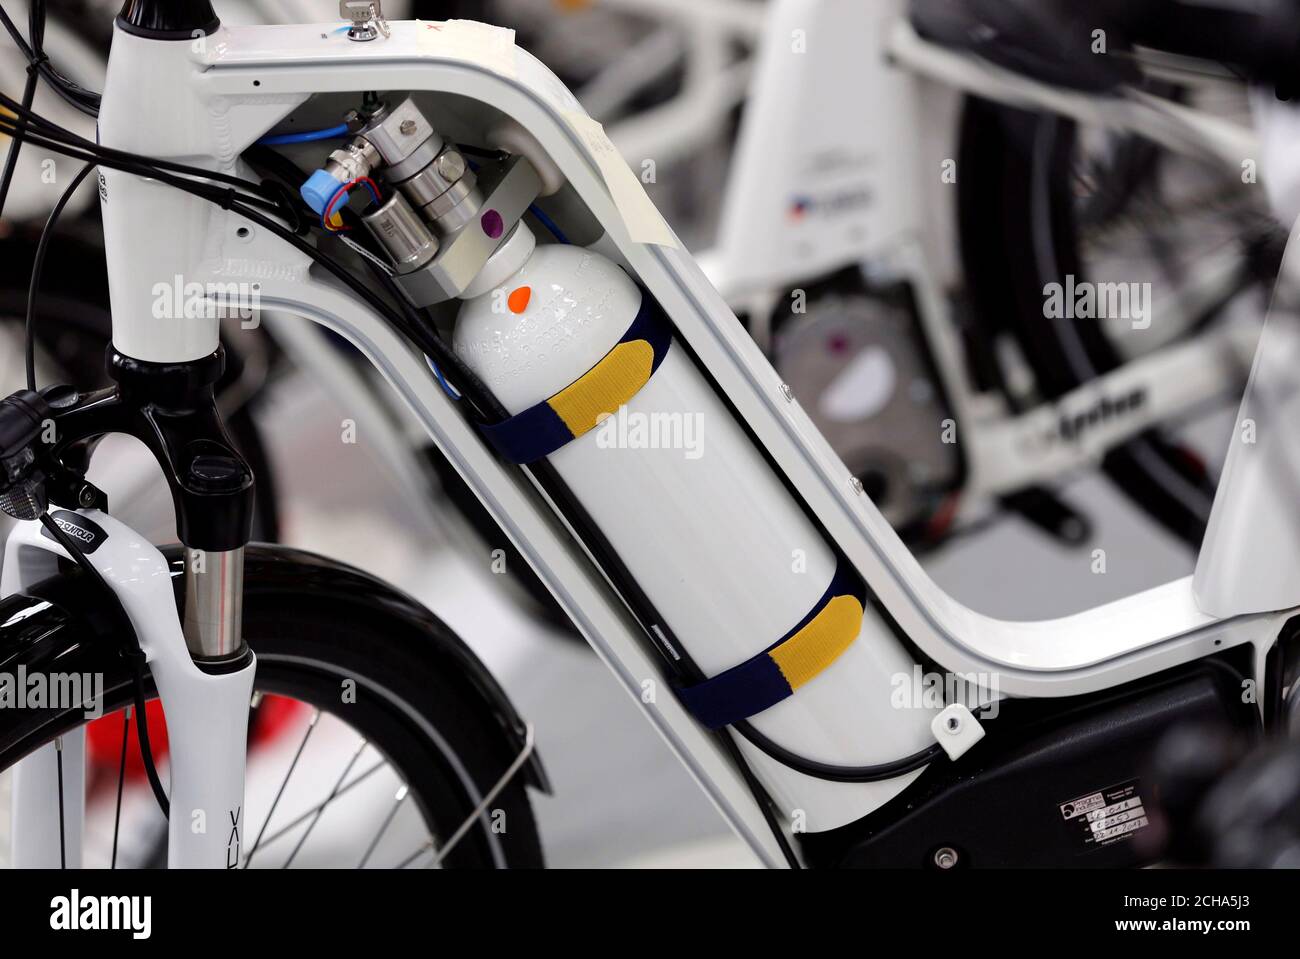 Un vélo Alpha, le premier vélo industrialisé à utiliser une pile à hydrogène,  est exposé à l'usine de Pragma Industries à Biarritz, France, le 15 janvier  2018. Photo prise le 15 janvier